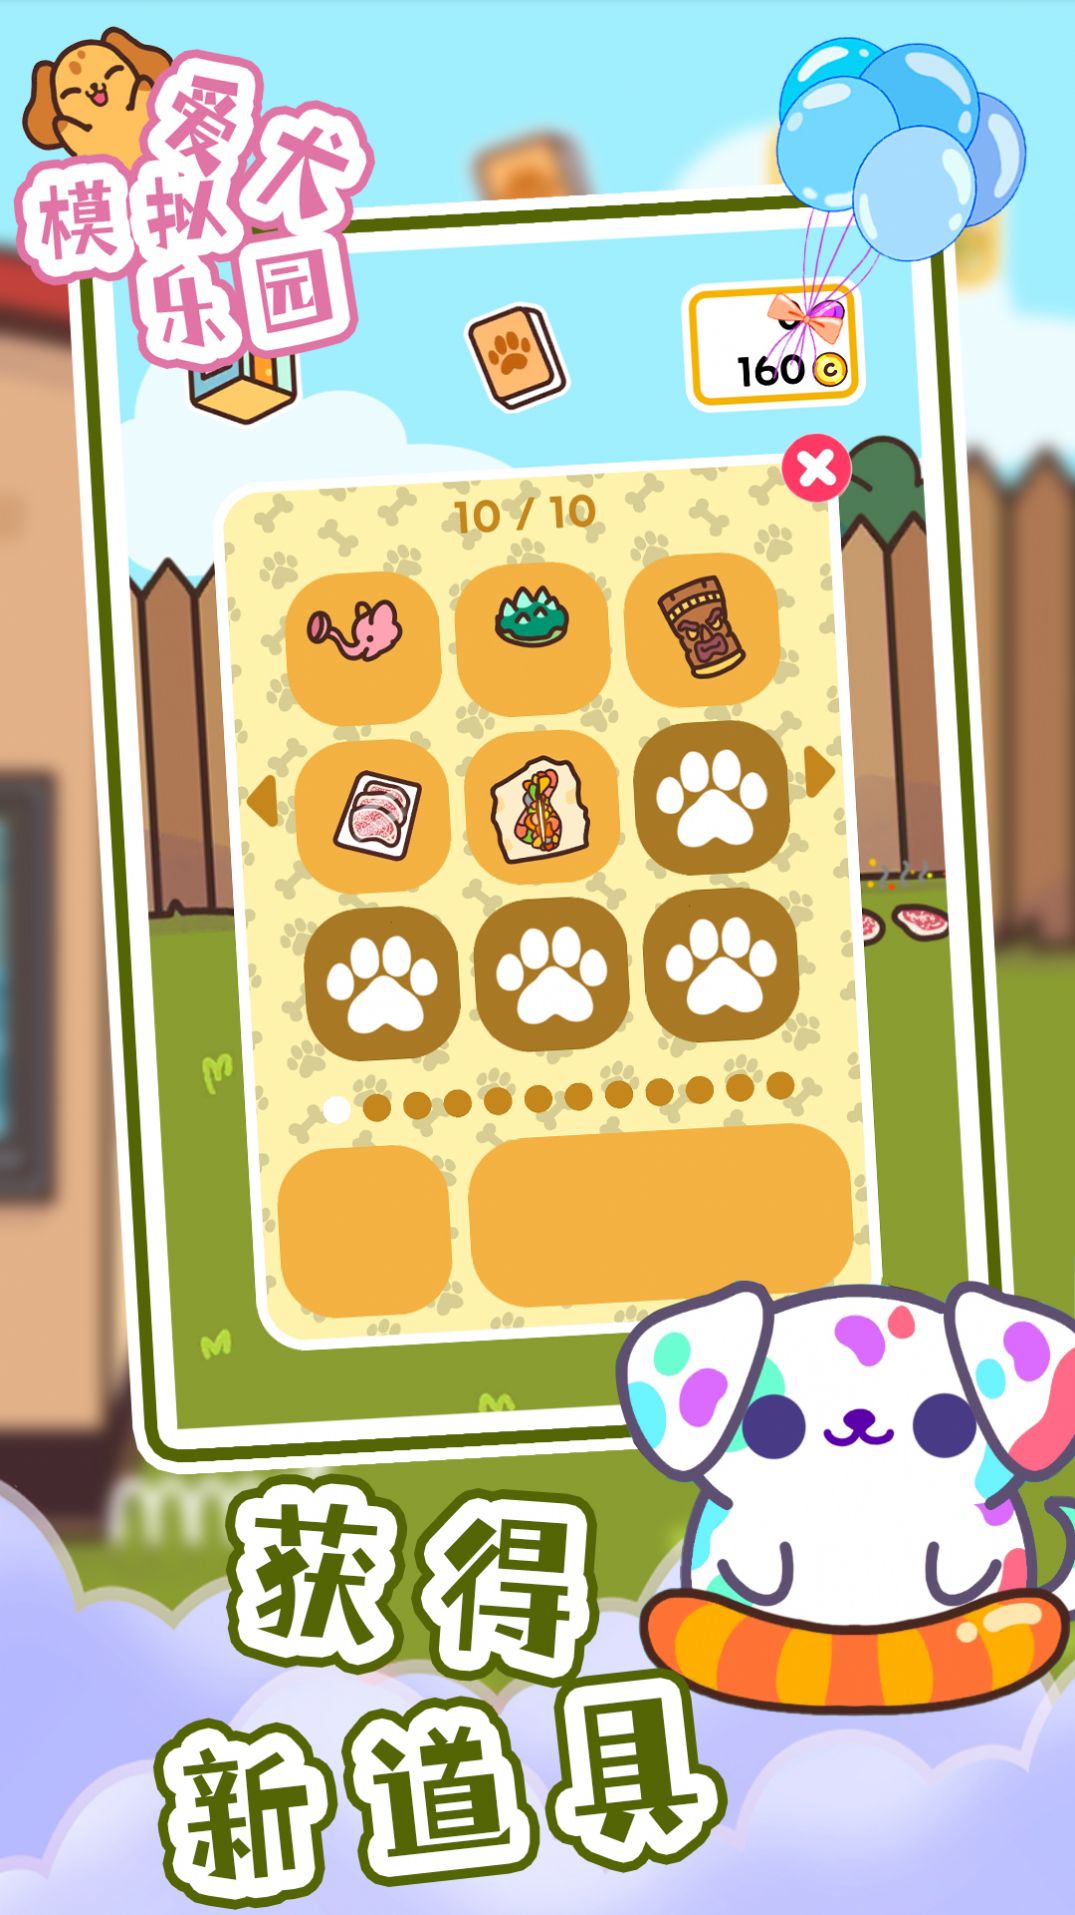 爱犬模拟乐园游戏官方安卓版图2